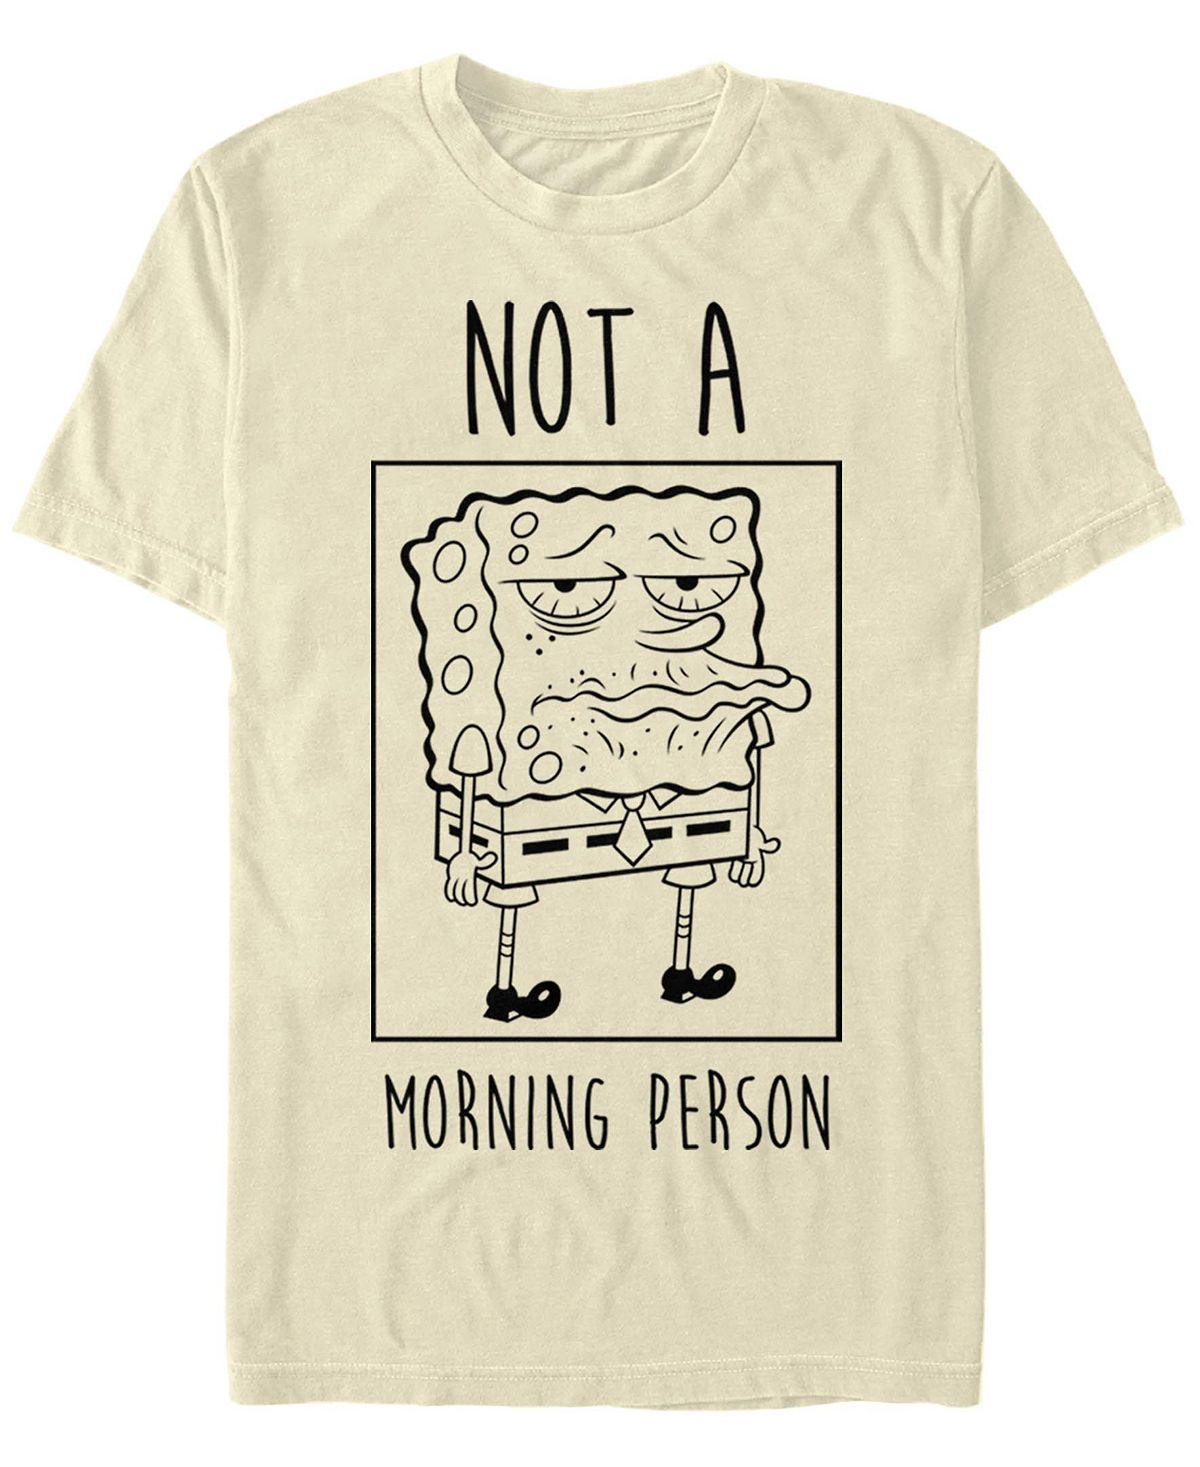 Мужская футболка not a morning person с коротким рукавом с круглым вырезом Fifth Sun мужская футболка с коротким рукавом eeyore not morning fifth sun синий